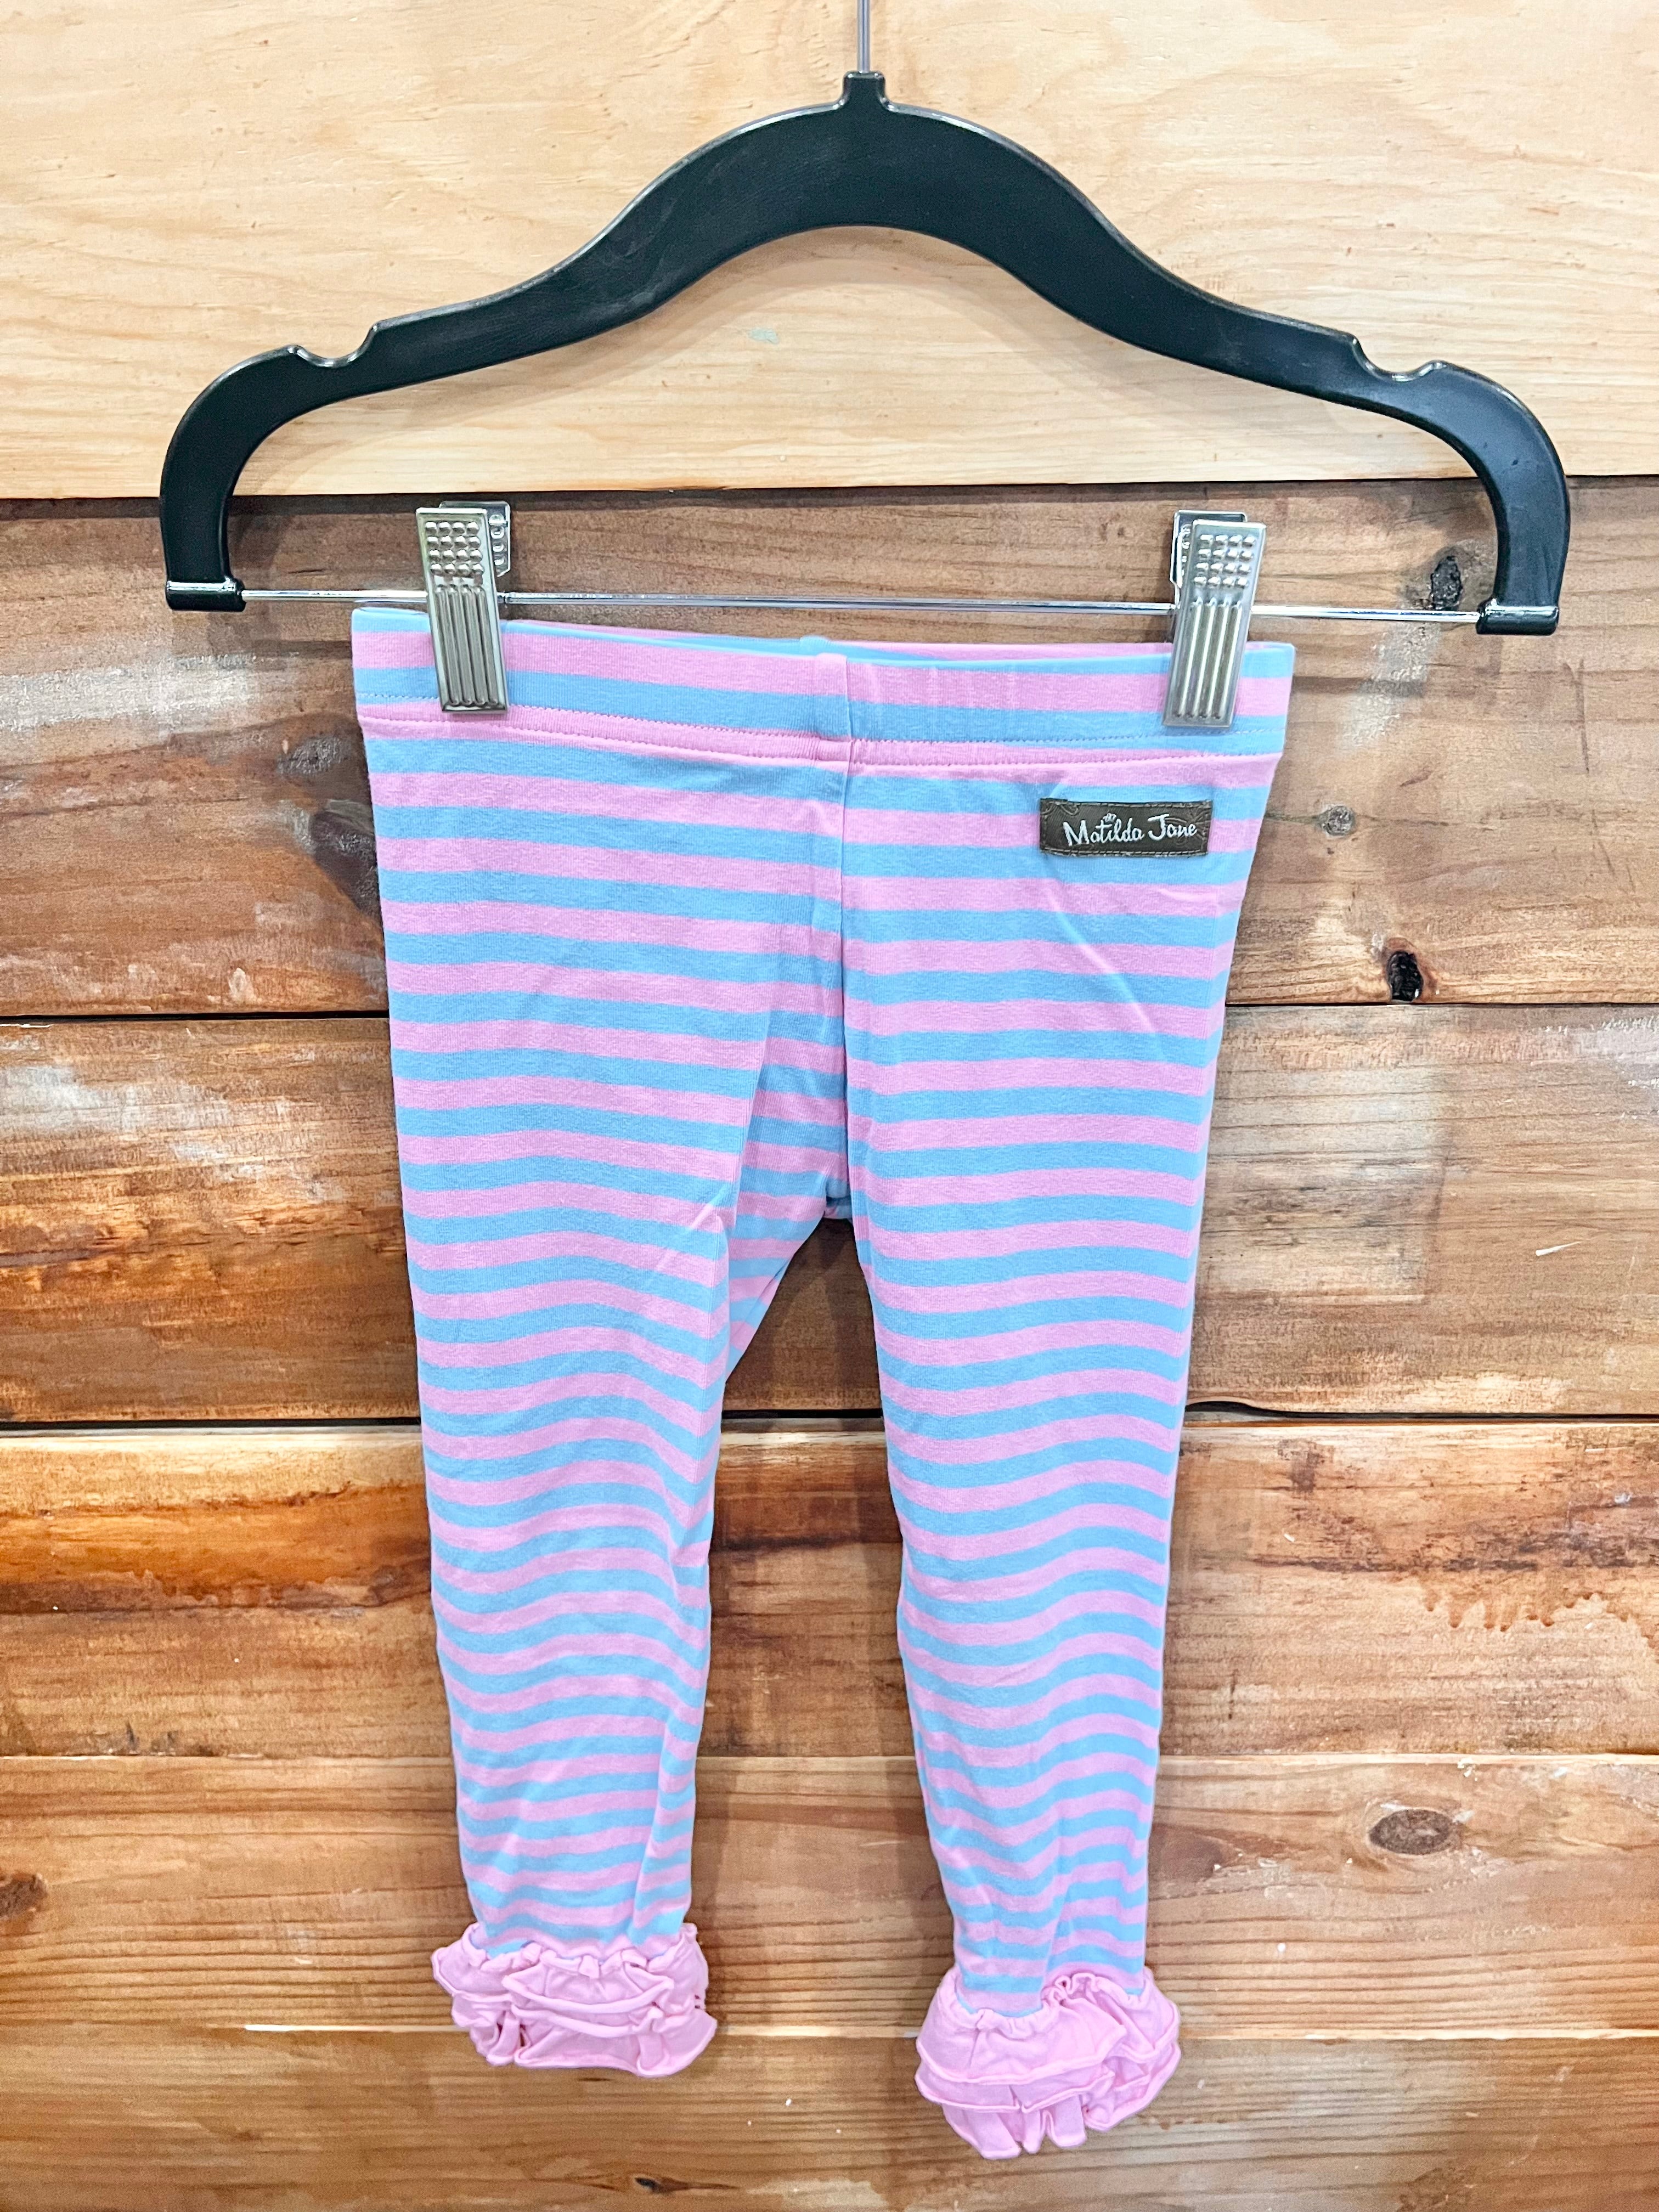 Matilda Jane Musing Away Leggings Girls Size 8 Pants Striped In Bag Pink  Blue